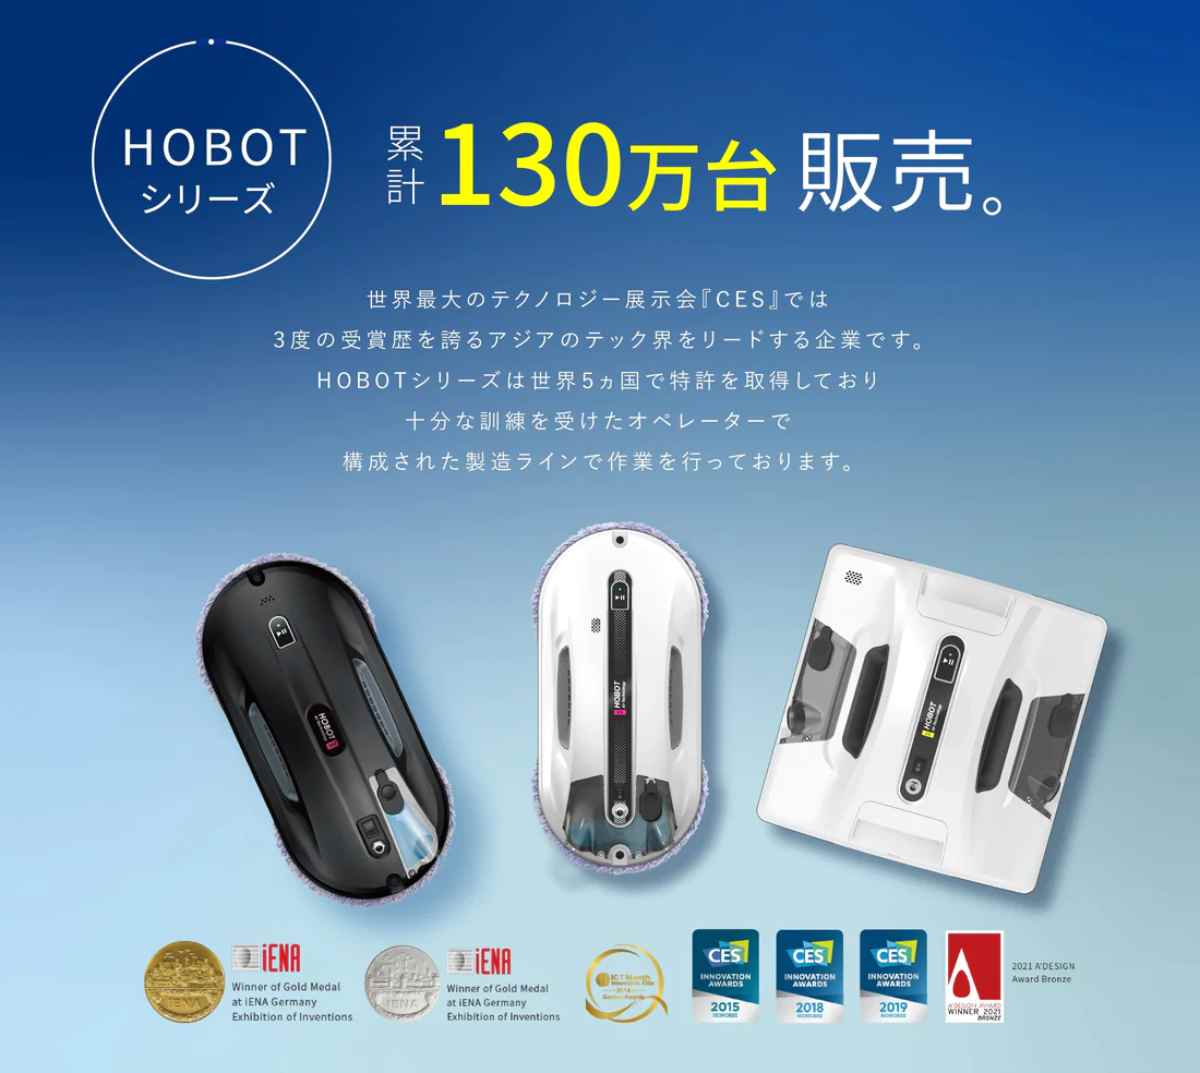 自動窓掃除ロボット HOBOT-R3 - 生活家電